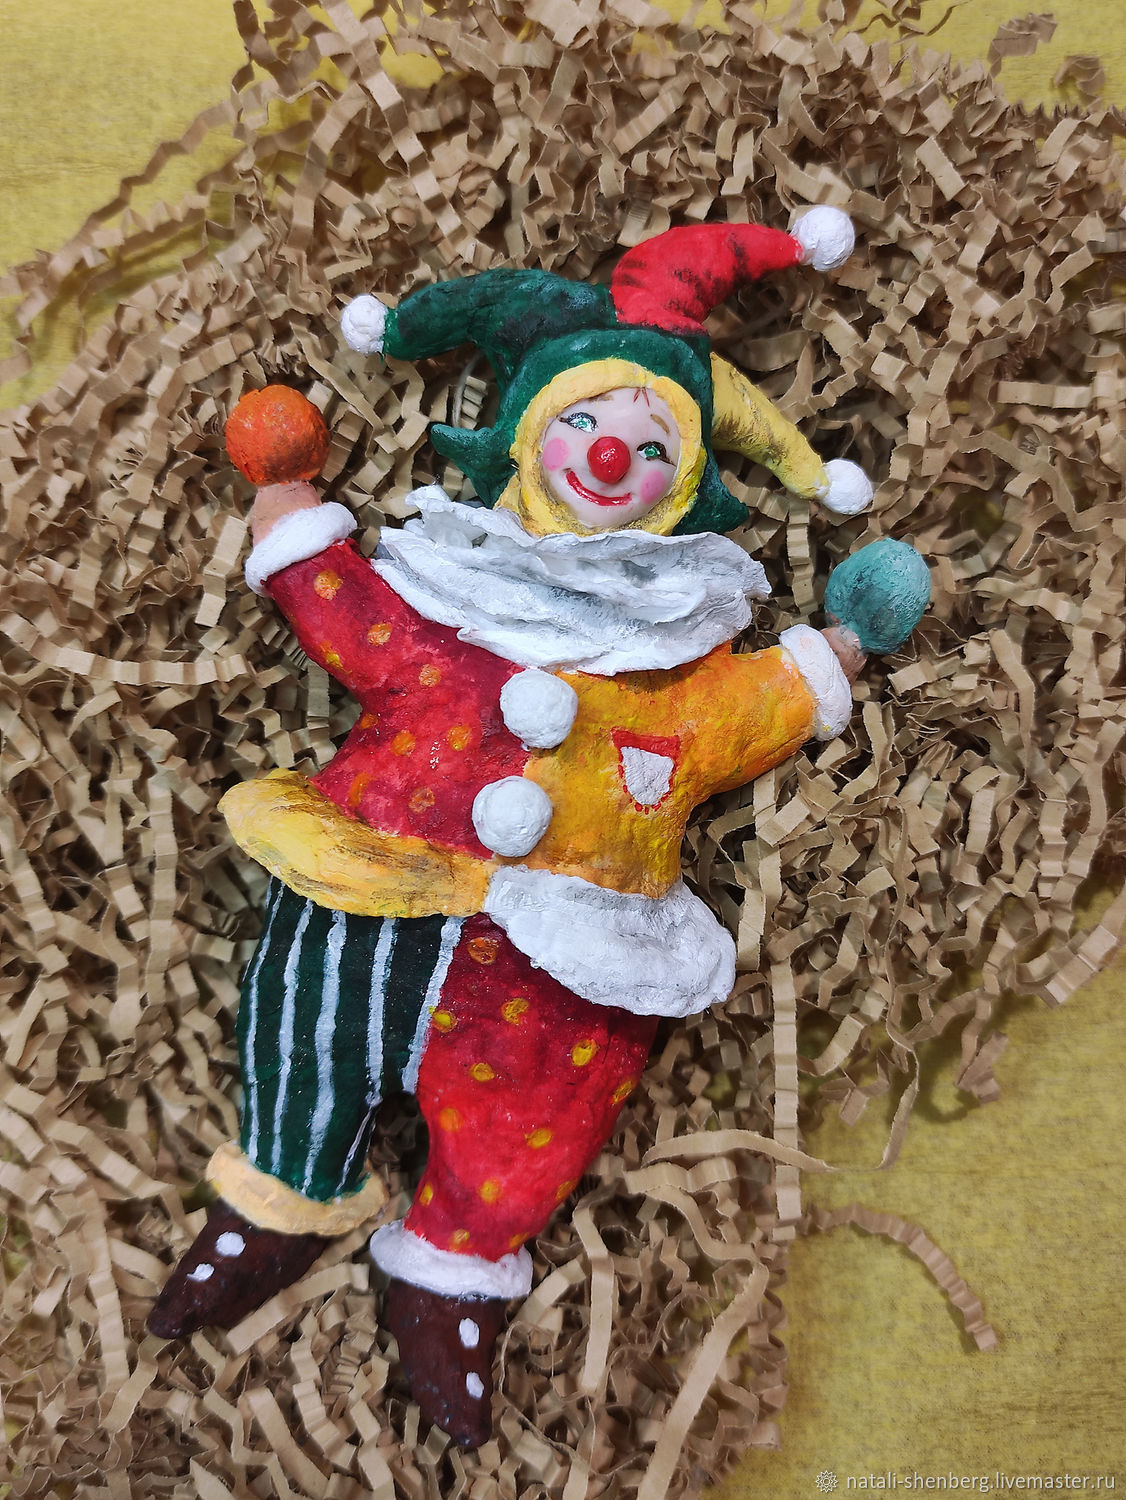 Публикация «Сюрпризная дидактическая игрушка „Веселый клоун“ своими руками» размещена в разделах